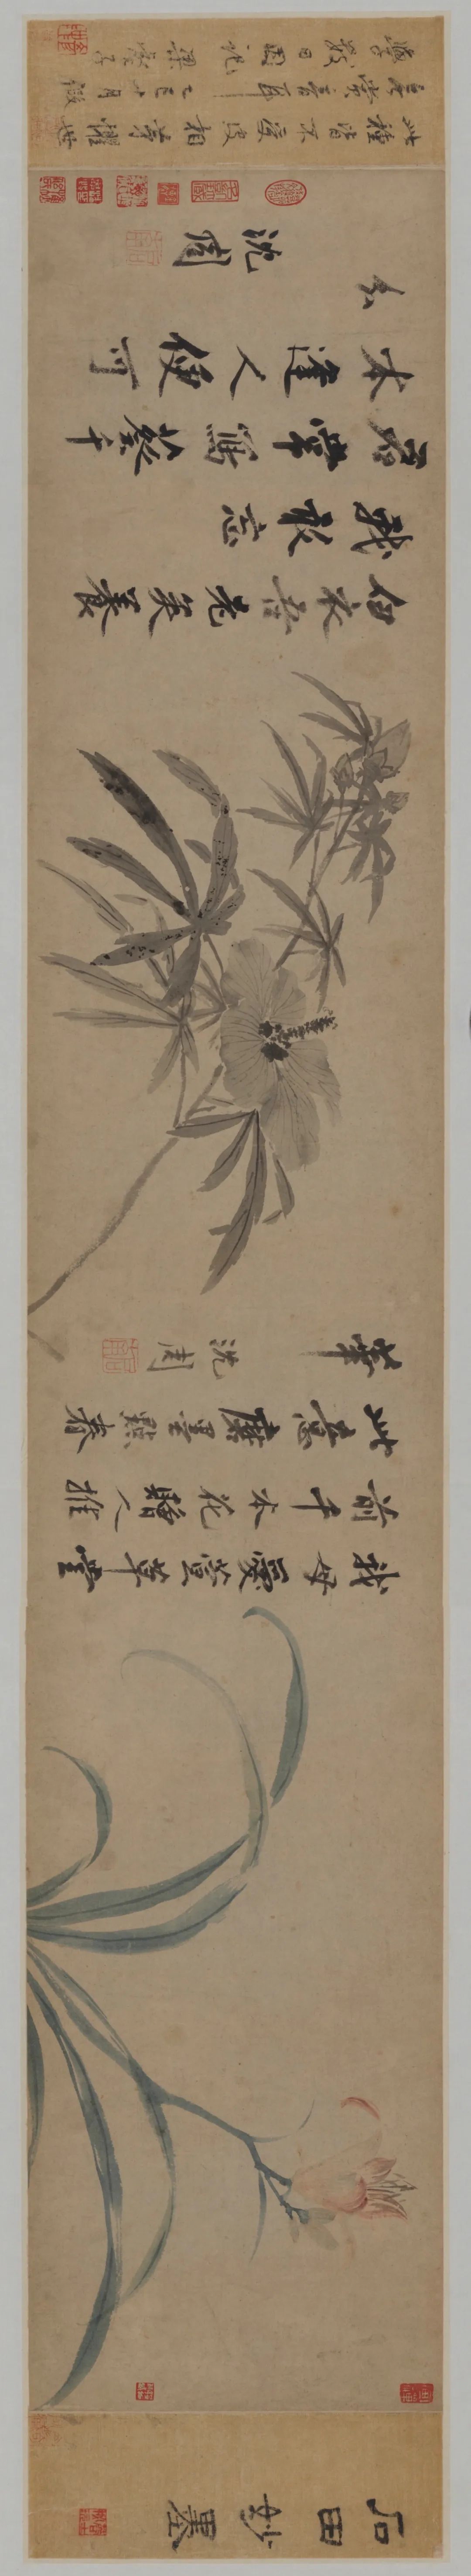 Ming Shen Zhou's "Hemerocallis Sunflower Scroll"